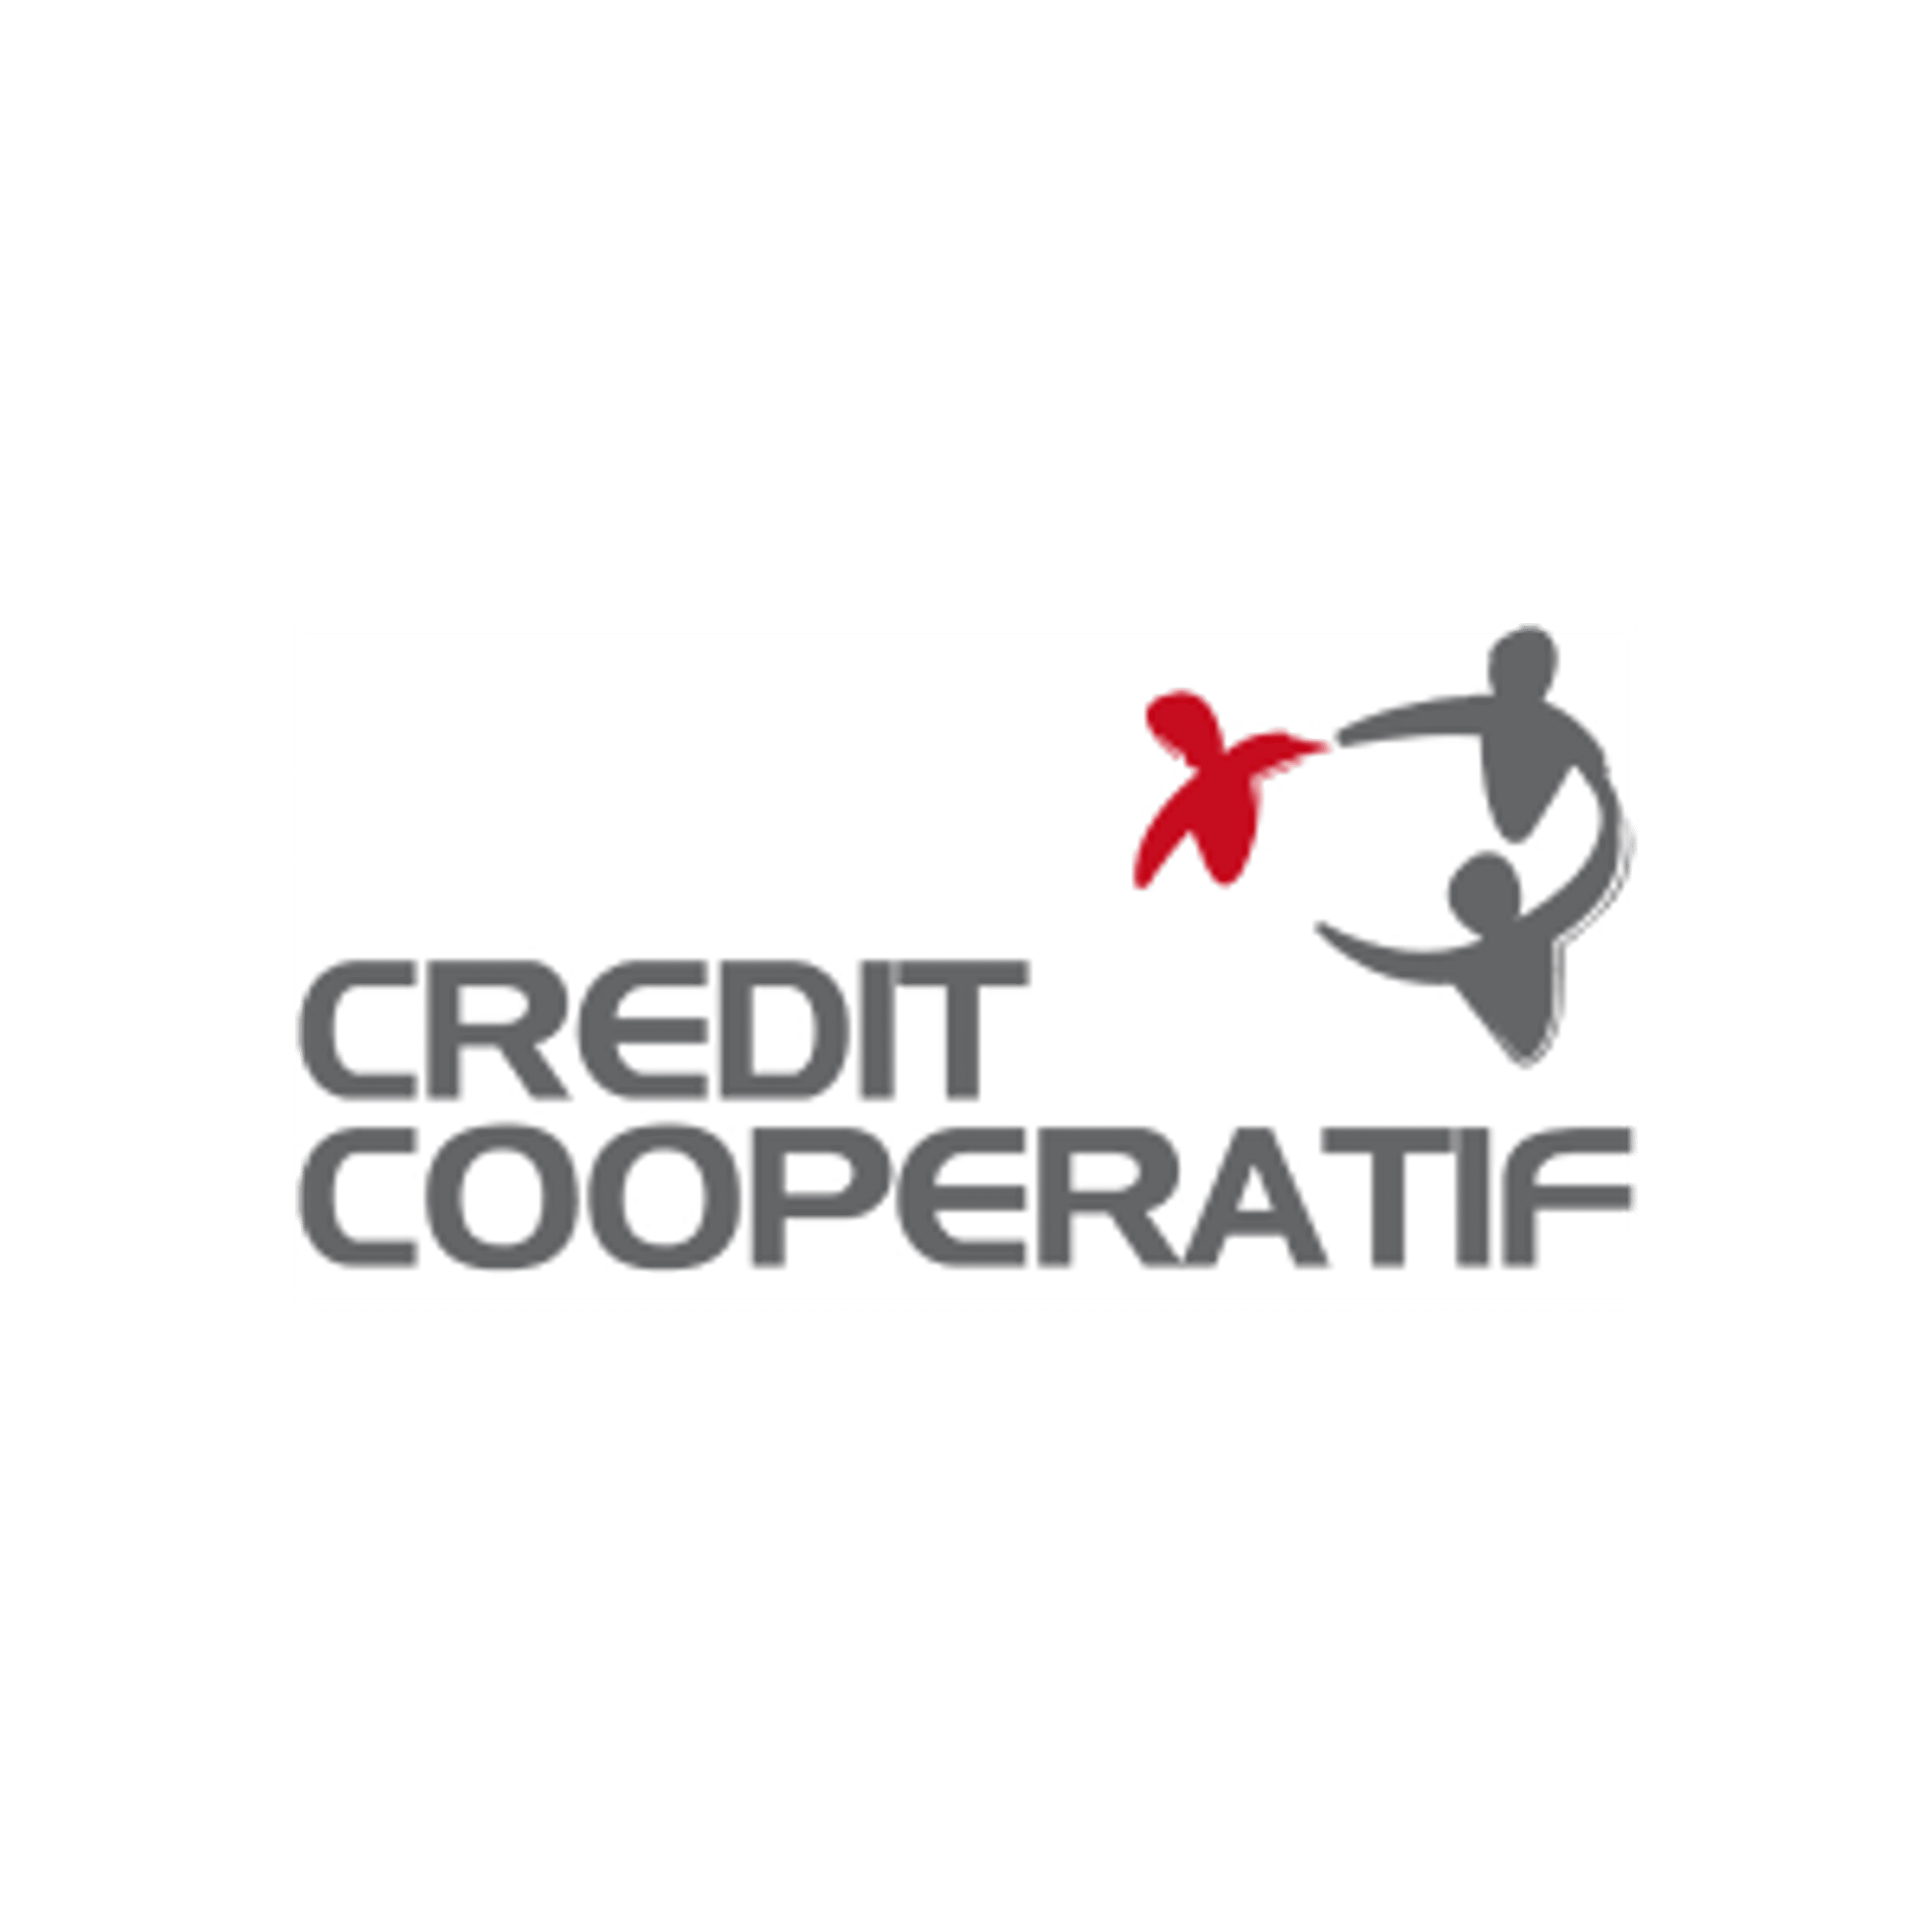 Credit Cooperatif